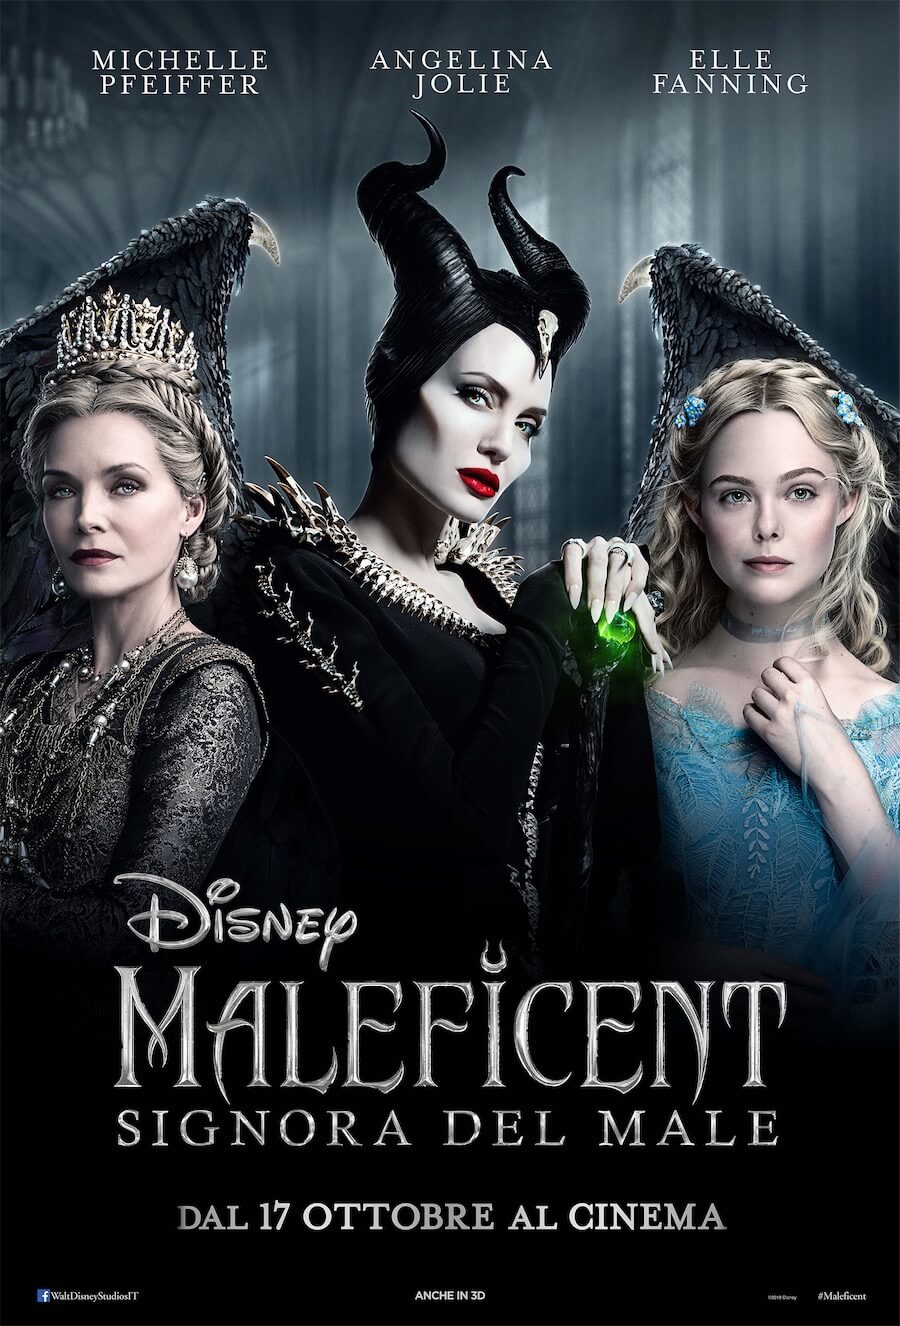 Maleficent - Signora del Male, trailer italiano per il sequel con Angelina Jolie e Michelle Pfeiffer - Maleficent Signora del Male - Gay.it